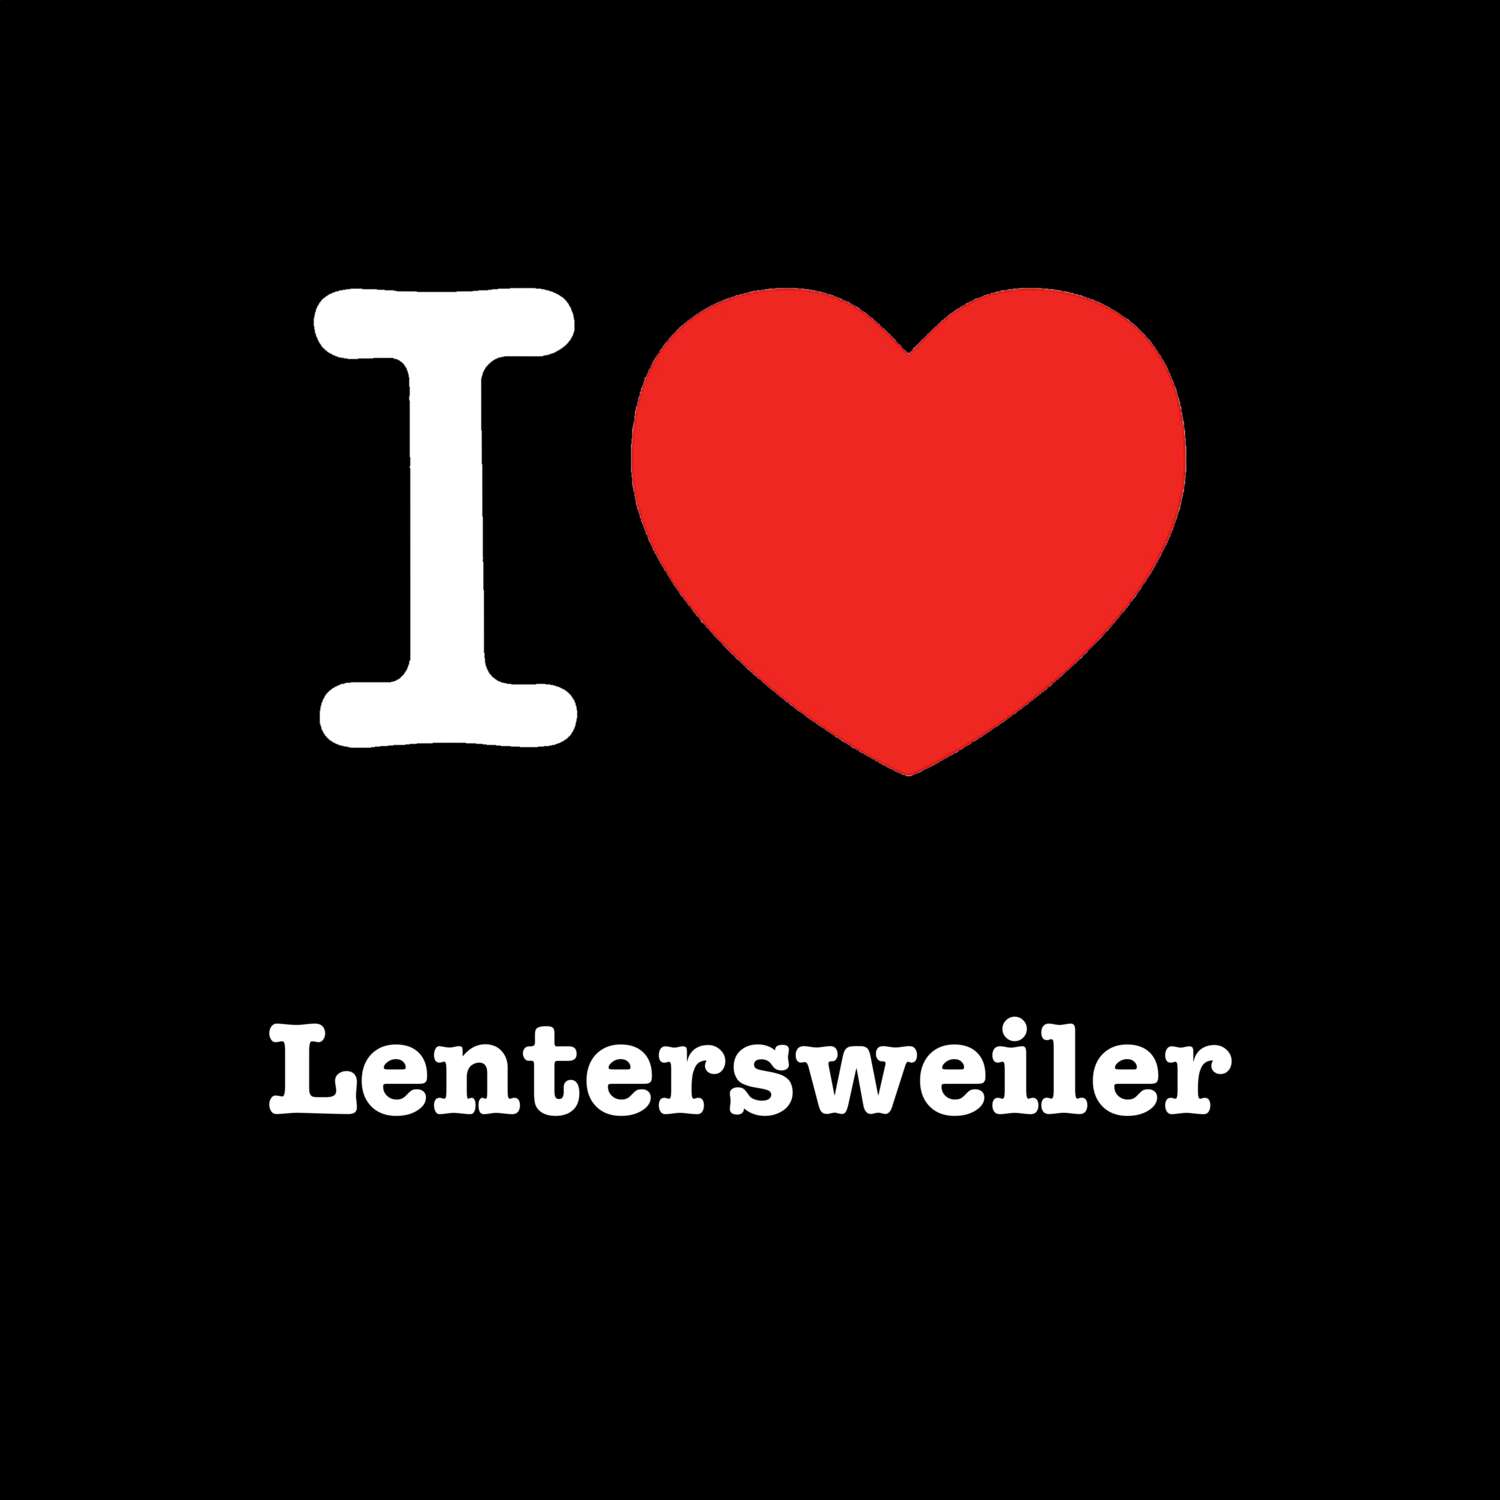 Lentersweiler T-Shirt »I love«